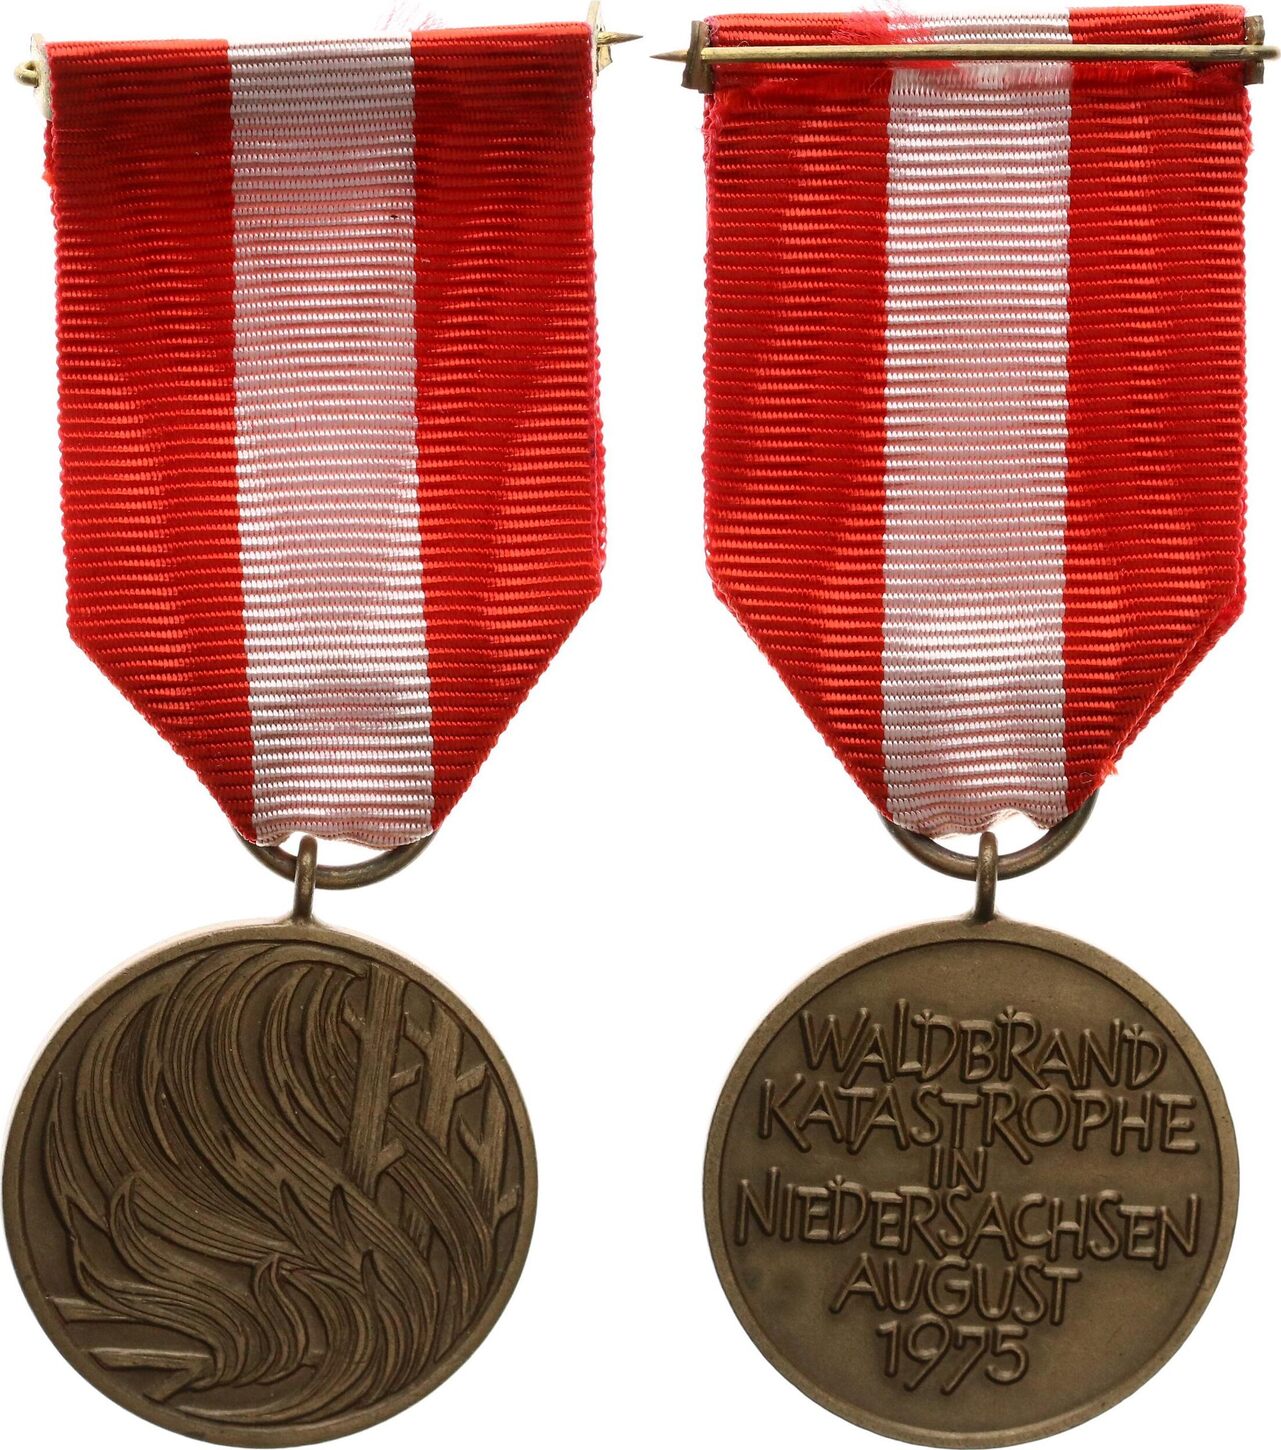 Deutschland - Niedersachsen Medaille - Waldbrand-Katastrophe in  Niedersachsen August 1975 vz-st | MA-Shops